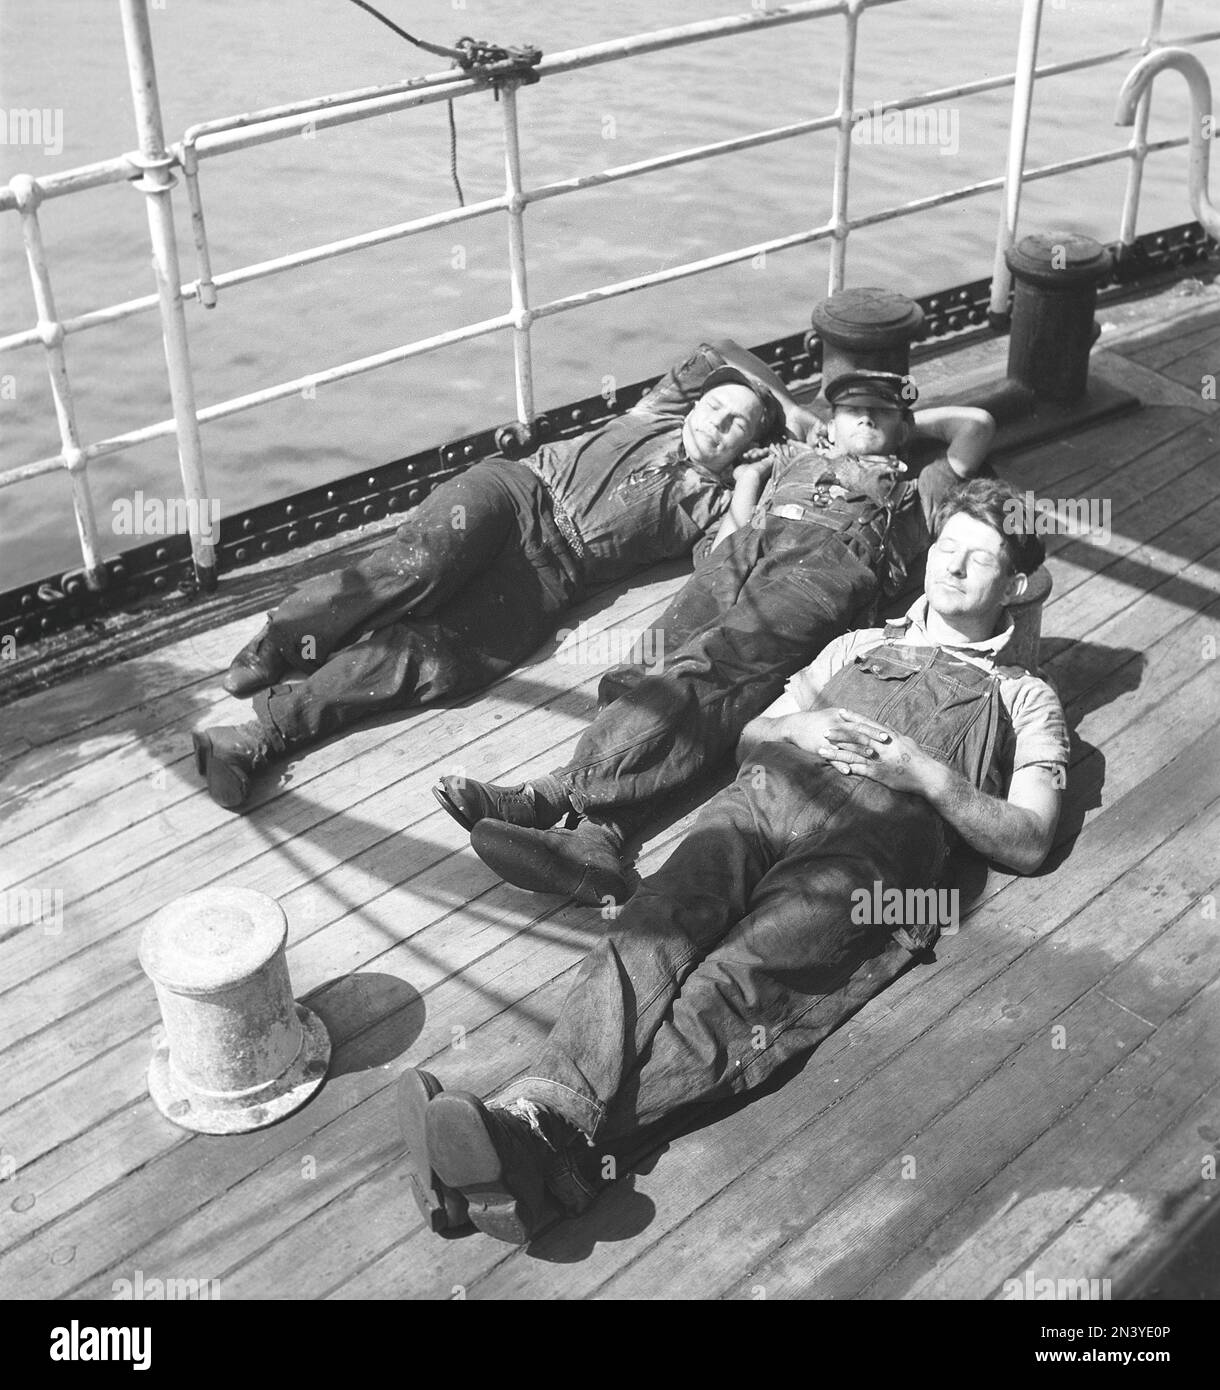 Avoir une sieste dans le 1940s. Trois marins fatigués reposant sur le pont au soleil. Ils font partie de l'équipage d'un navire norvégien, coincé en Suède pendant la Seconde Guerre mondiale, sans avoir la chance de retourner en Norvège qui à cette époque a été envahi par l'Allemagne nazie. Suède 11 juin 1940 Kristoffersson réf. 147-12 Banque D'Images